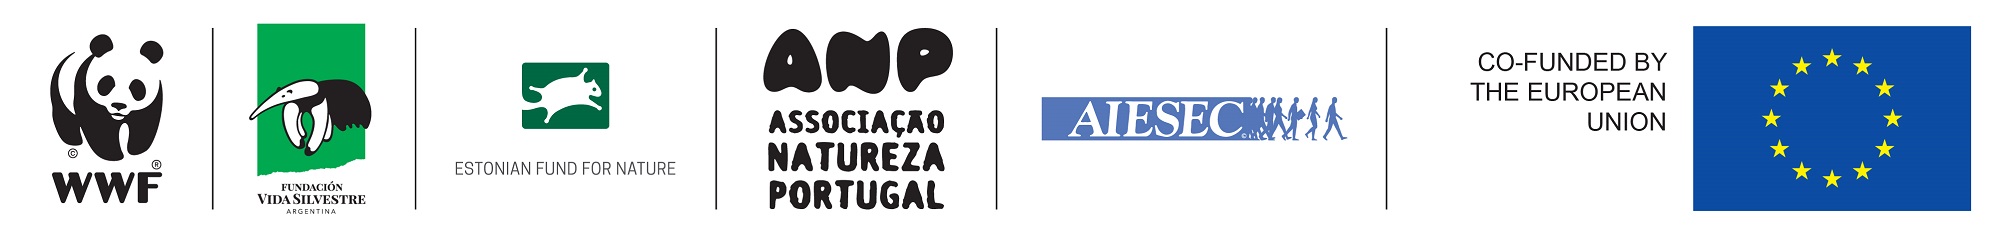 DEAR program logos